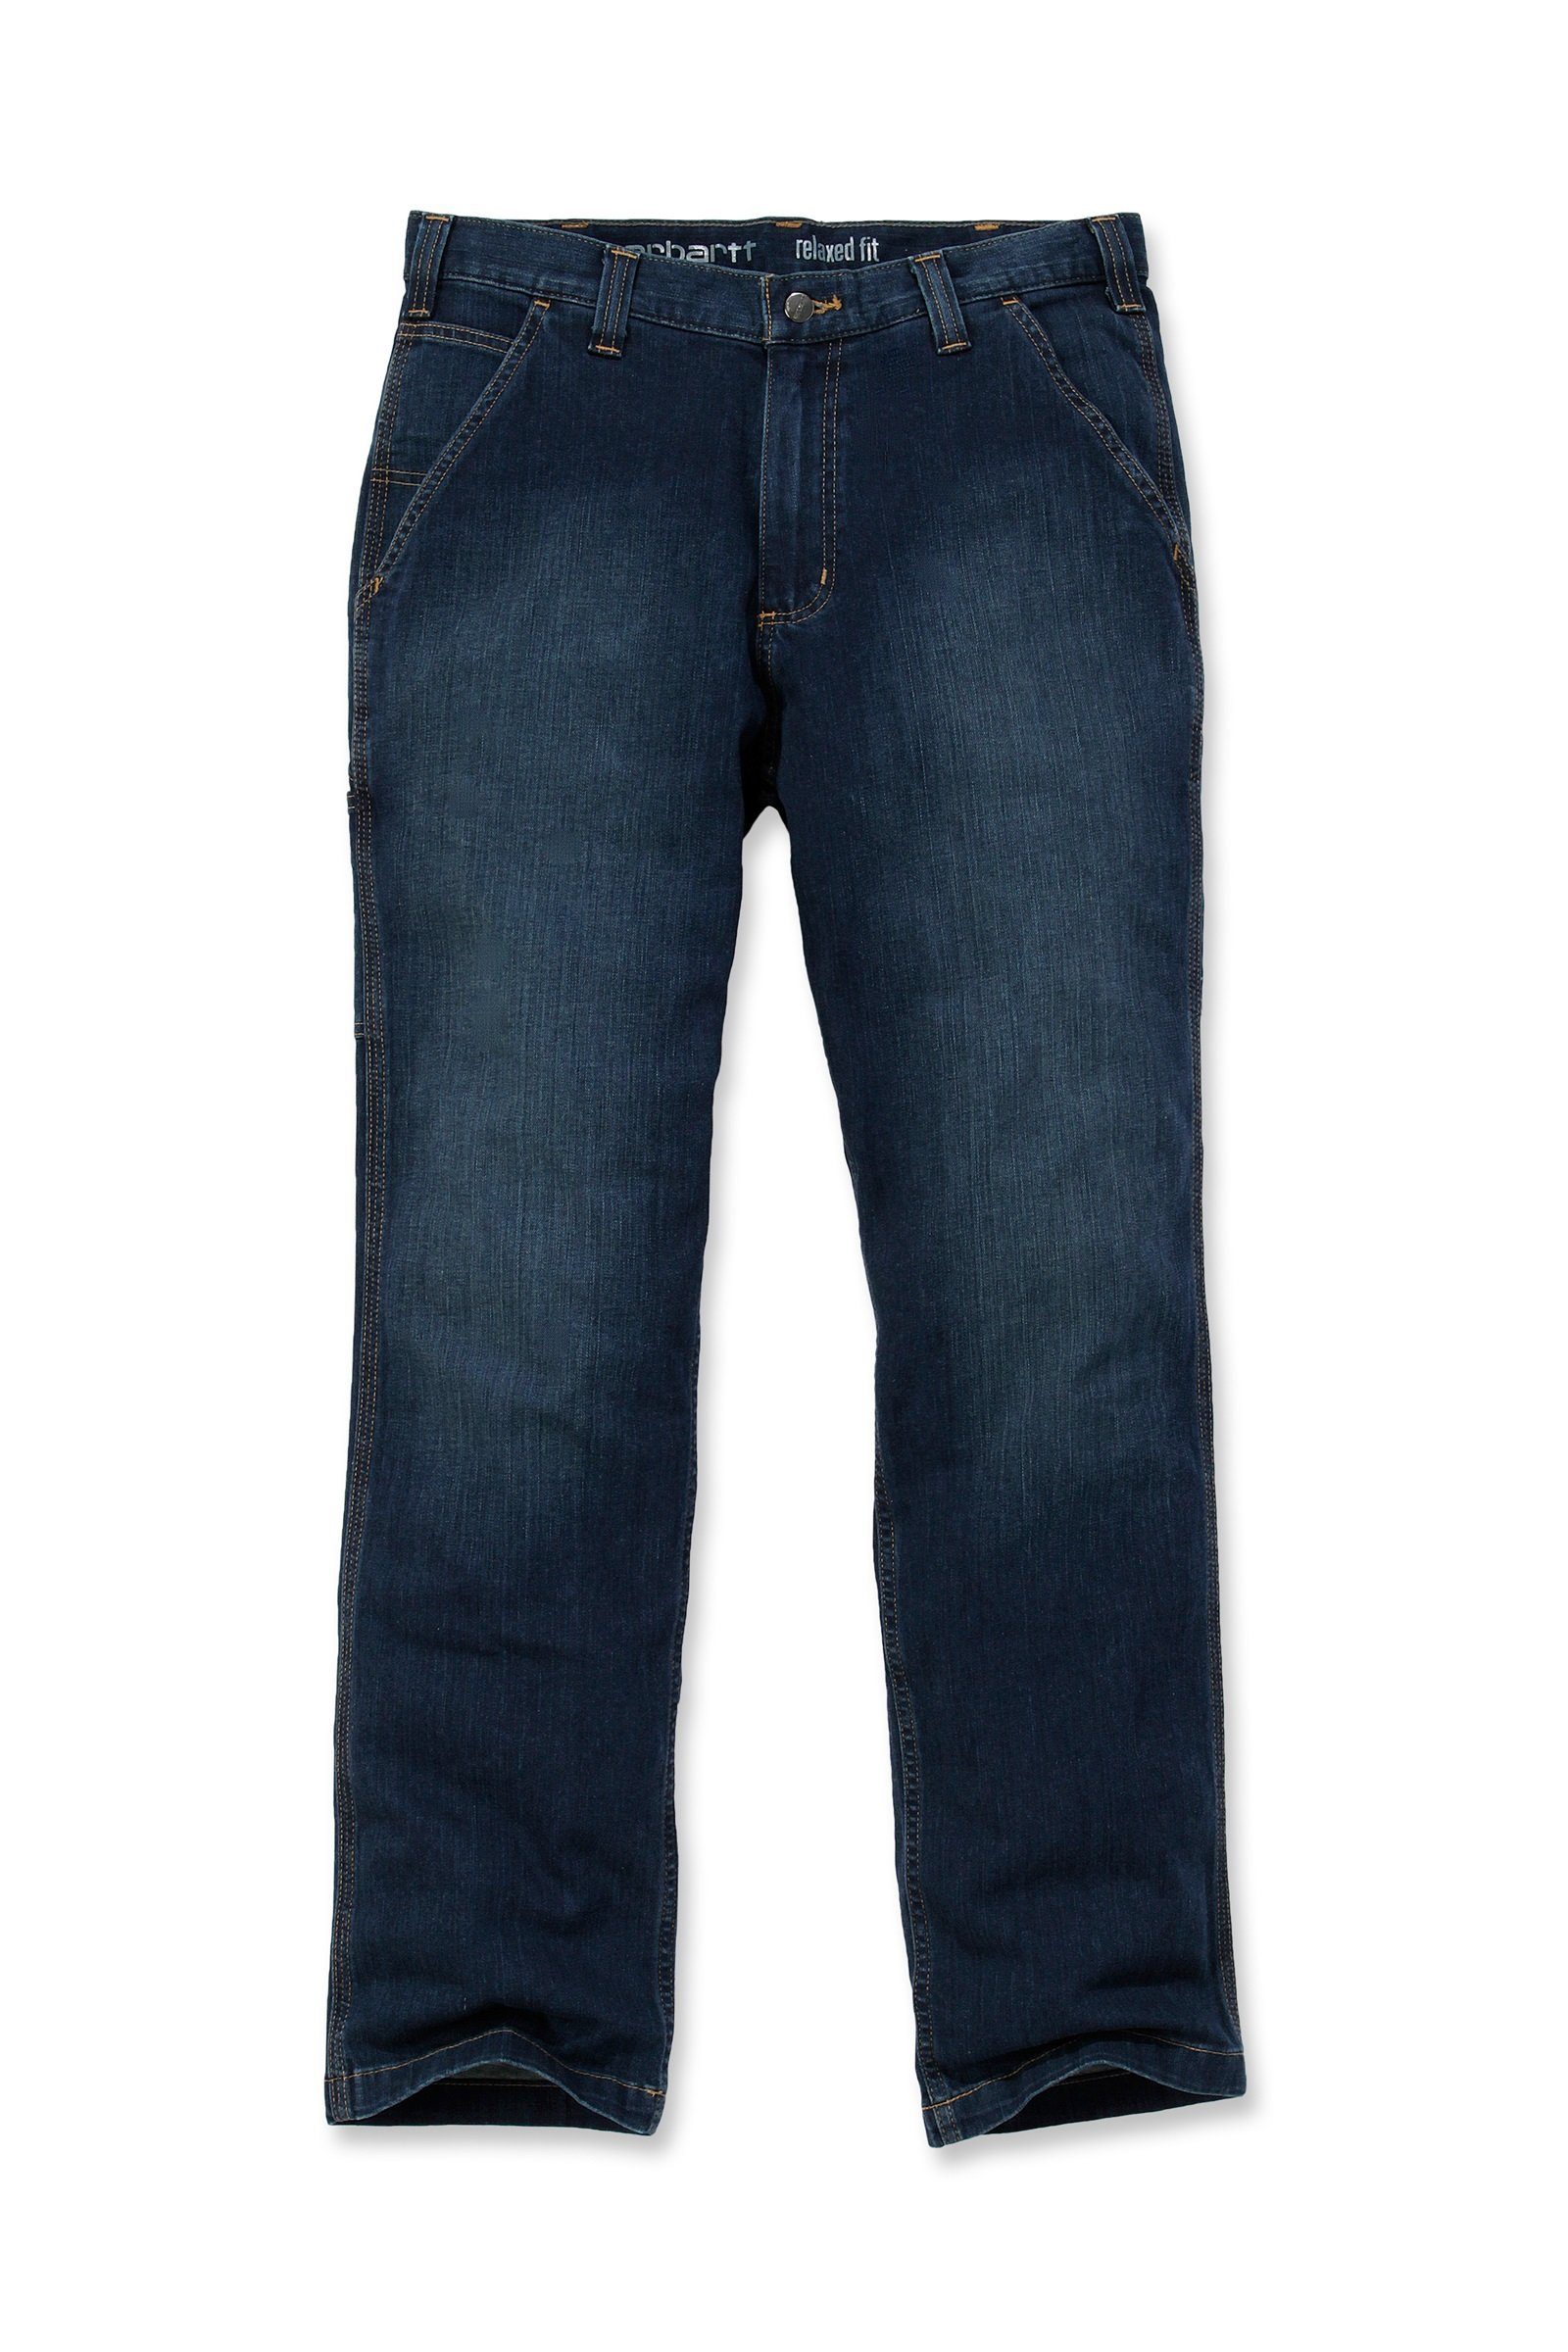 Relaxed Carhartt Flex Regular-fit-Jeans Jeans Rugged Herren Carhartt Dungaree